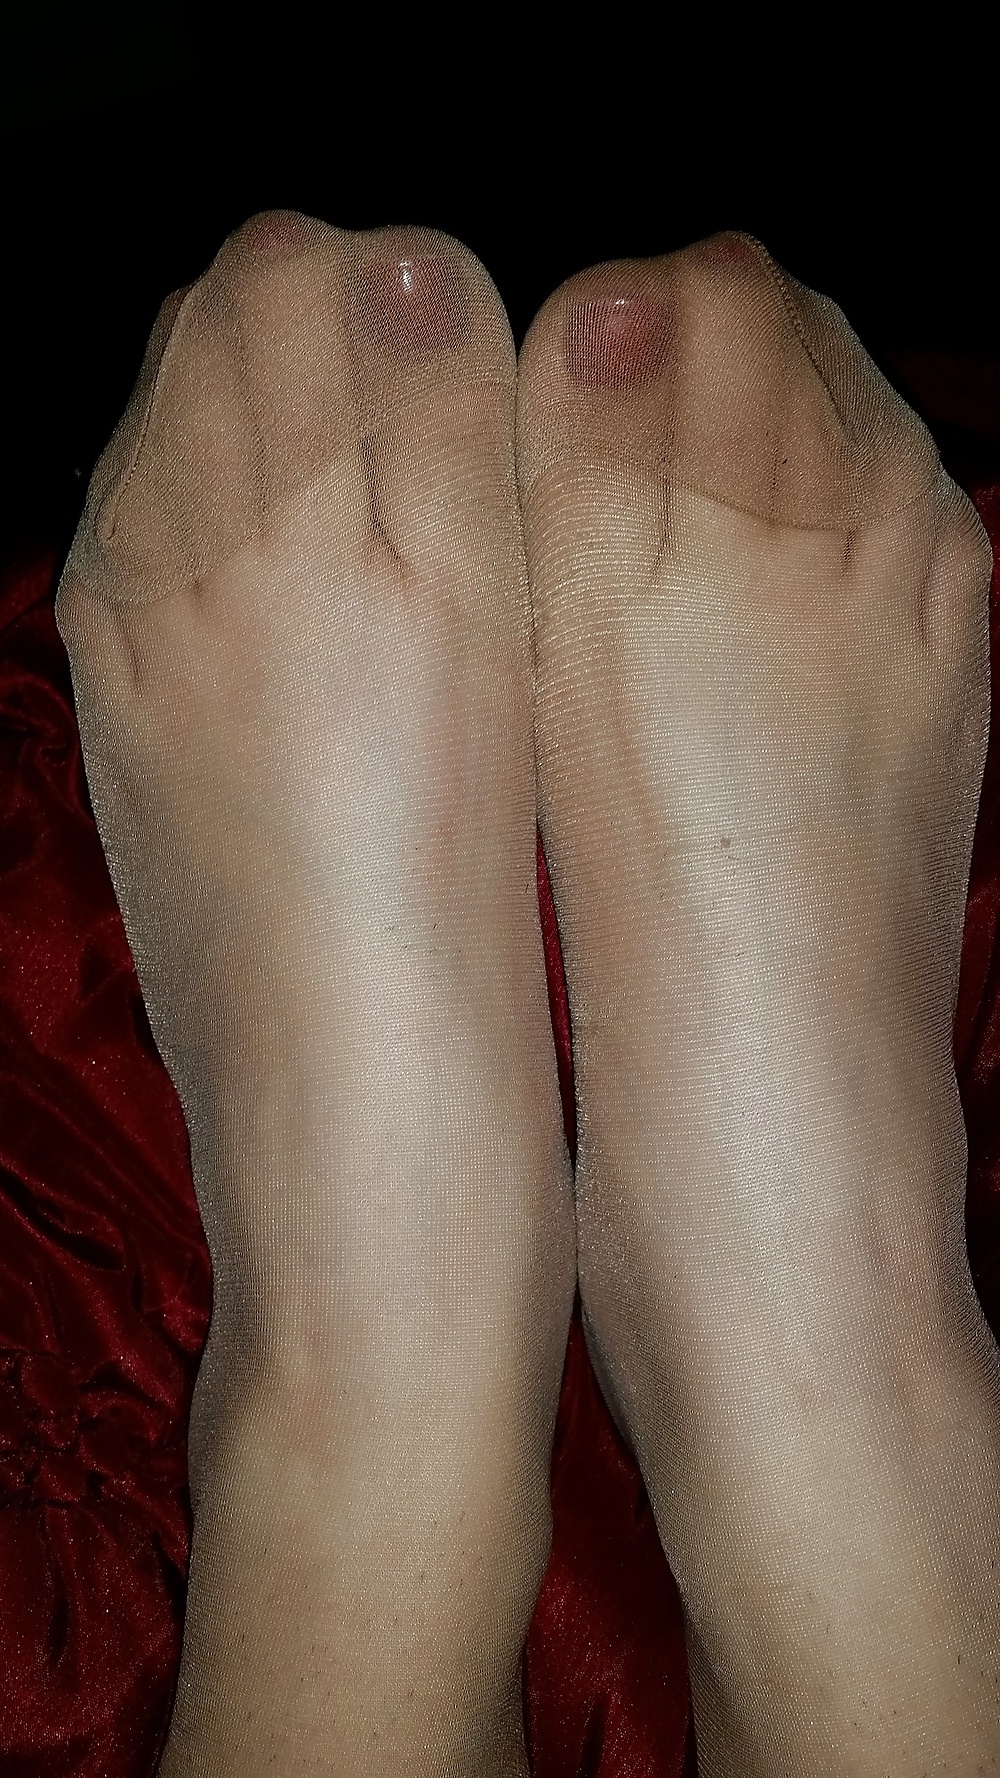 Pantyhose feet adult photos